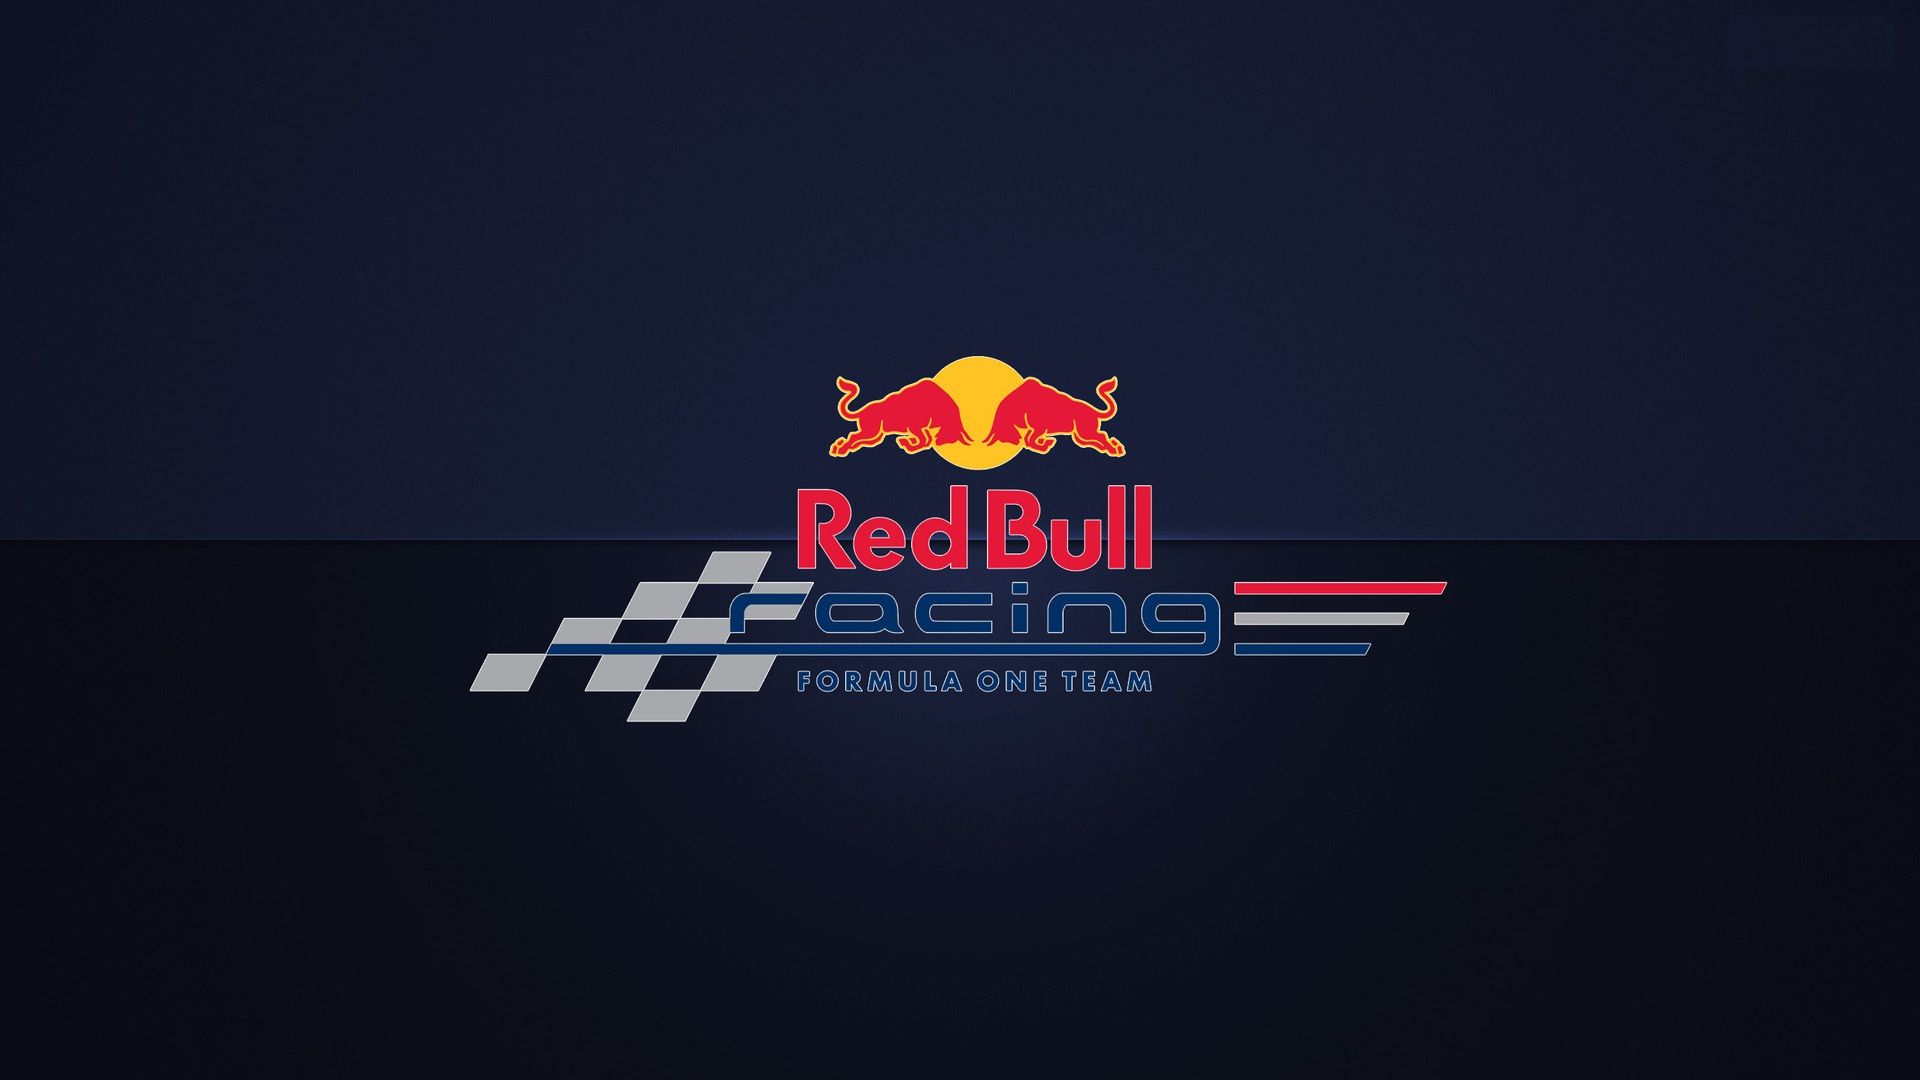 [72+] Red Bull Racing Wallpaper - WallpaperSafari